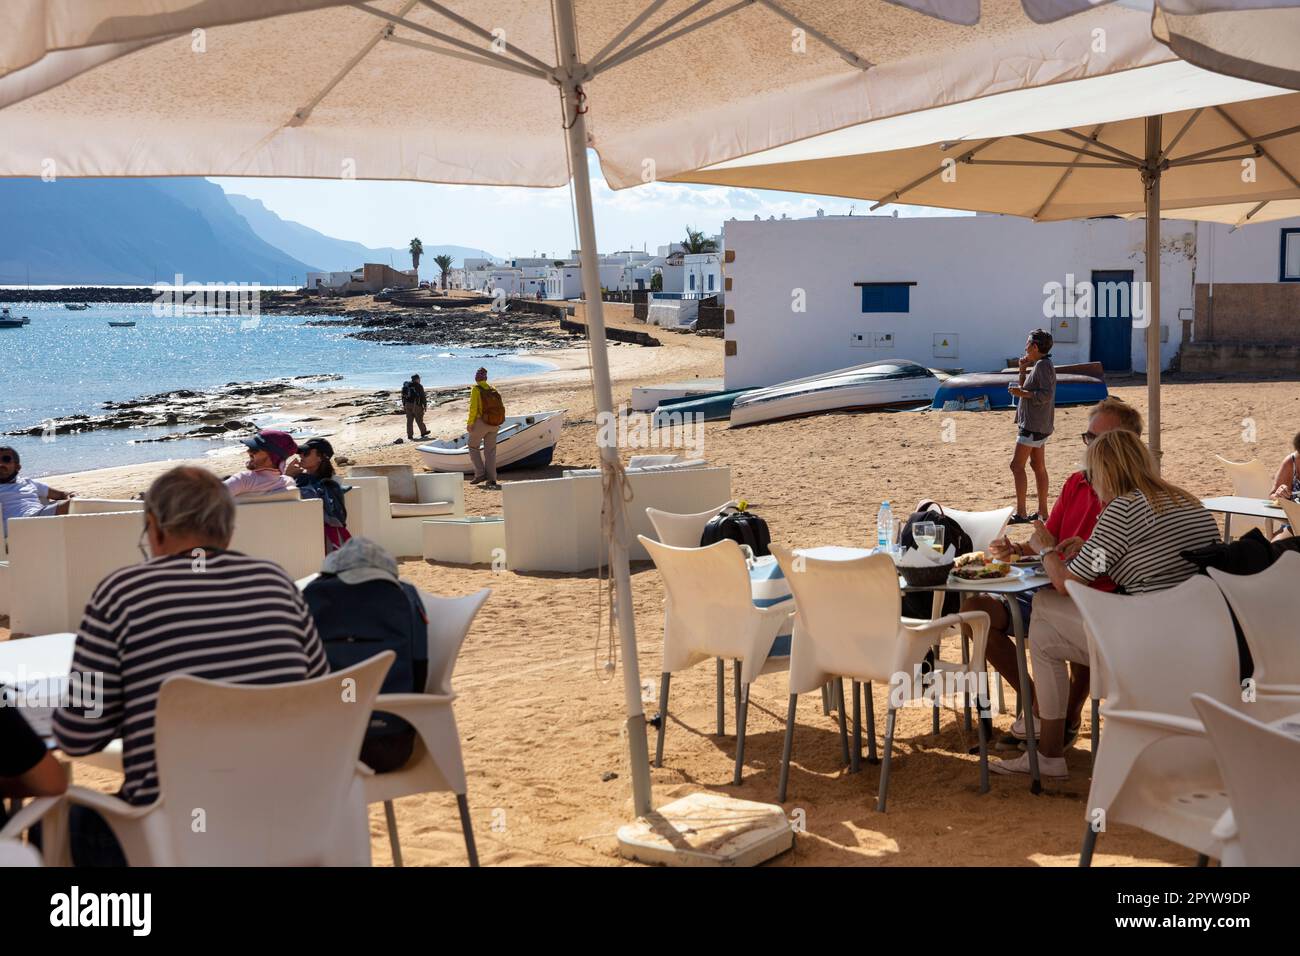 Spain, Canary Islands, Lanzarote island, La Graciosa Island. Caleta de Sebo. Port. Outdoor restaurant. Stock Photo